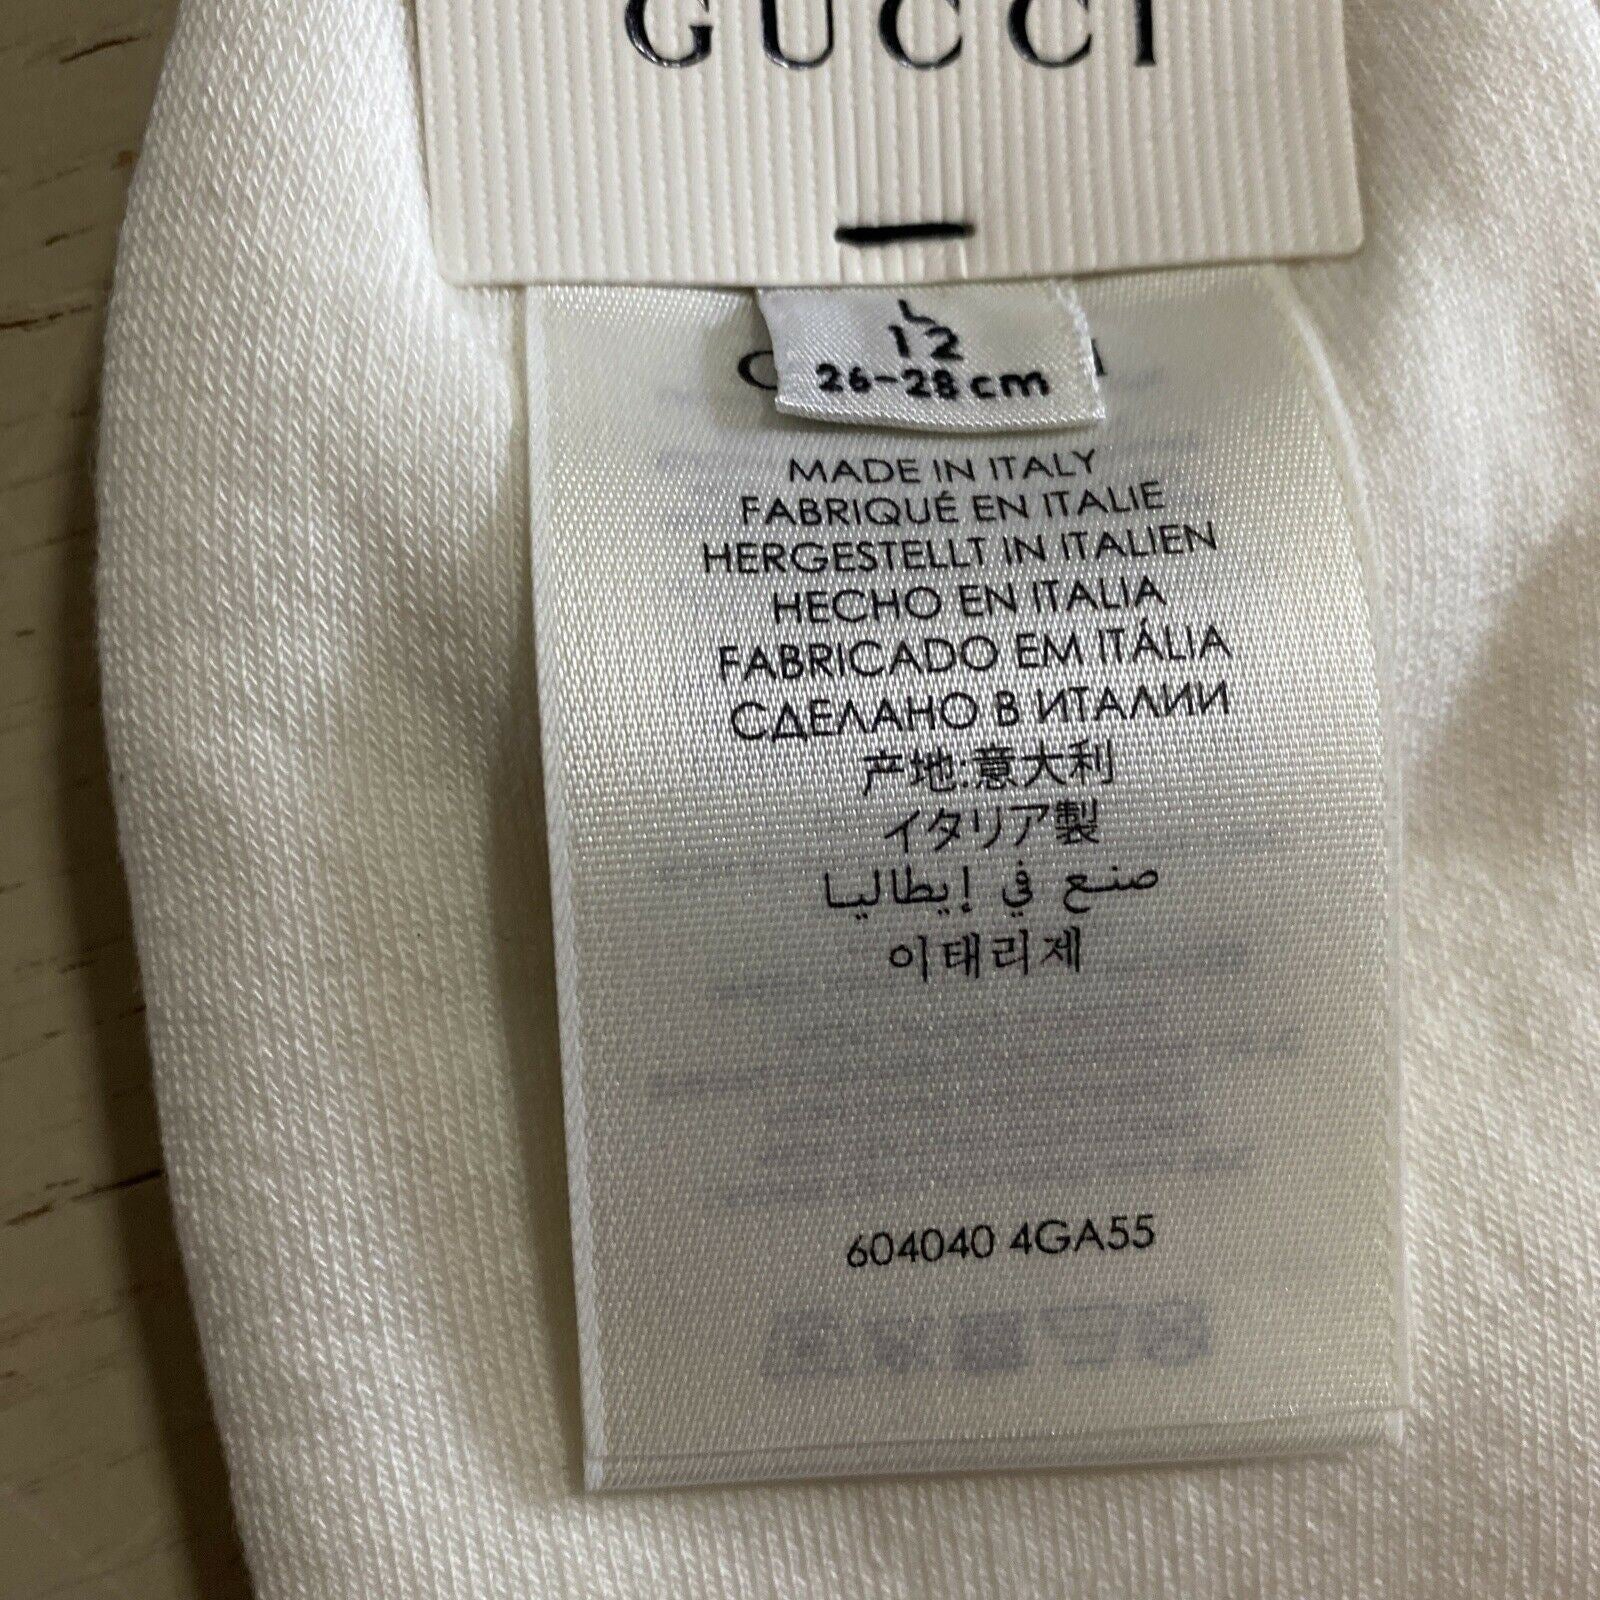 Neu mit Etikett: Gucci Herren-Baumwollsocken mit GG-Monogramm, Weiß, Größe L, Italien